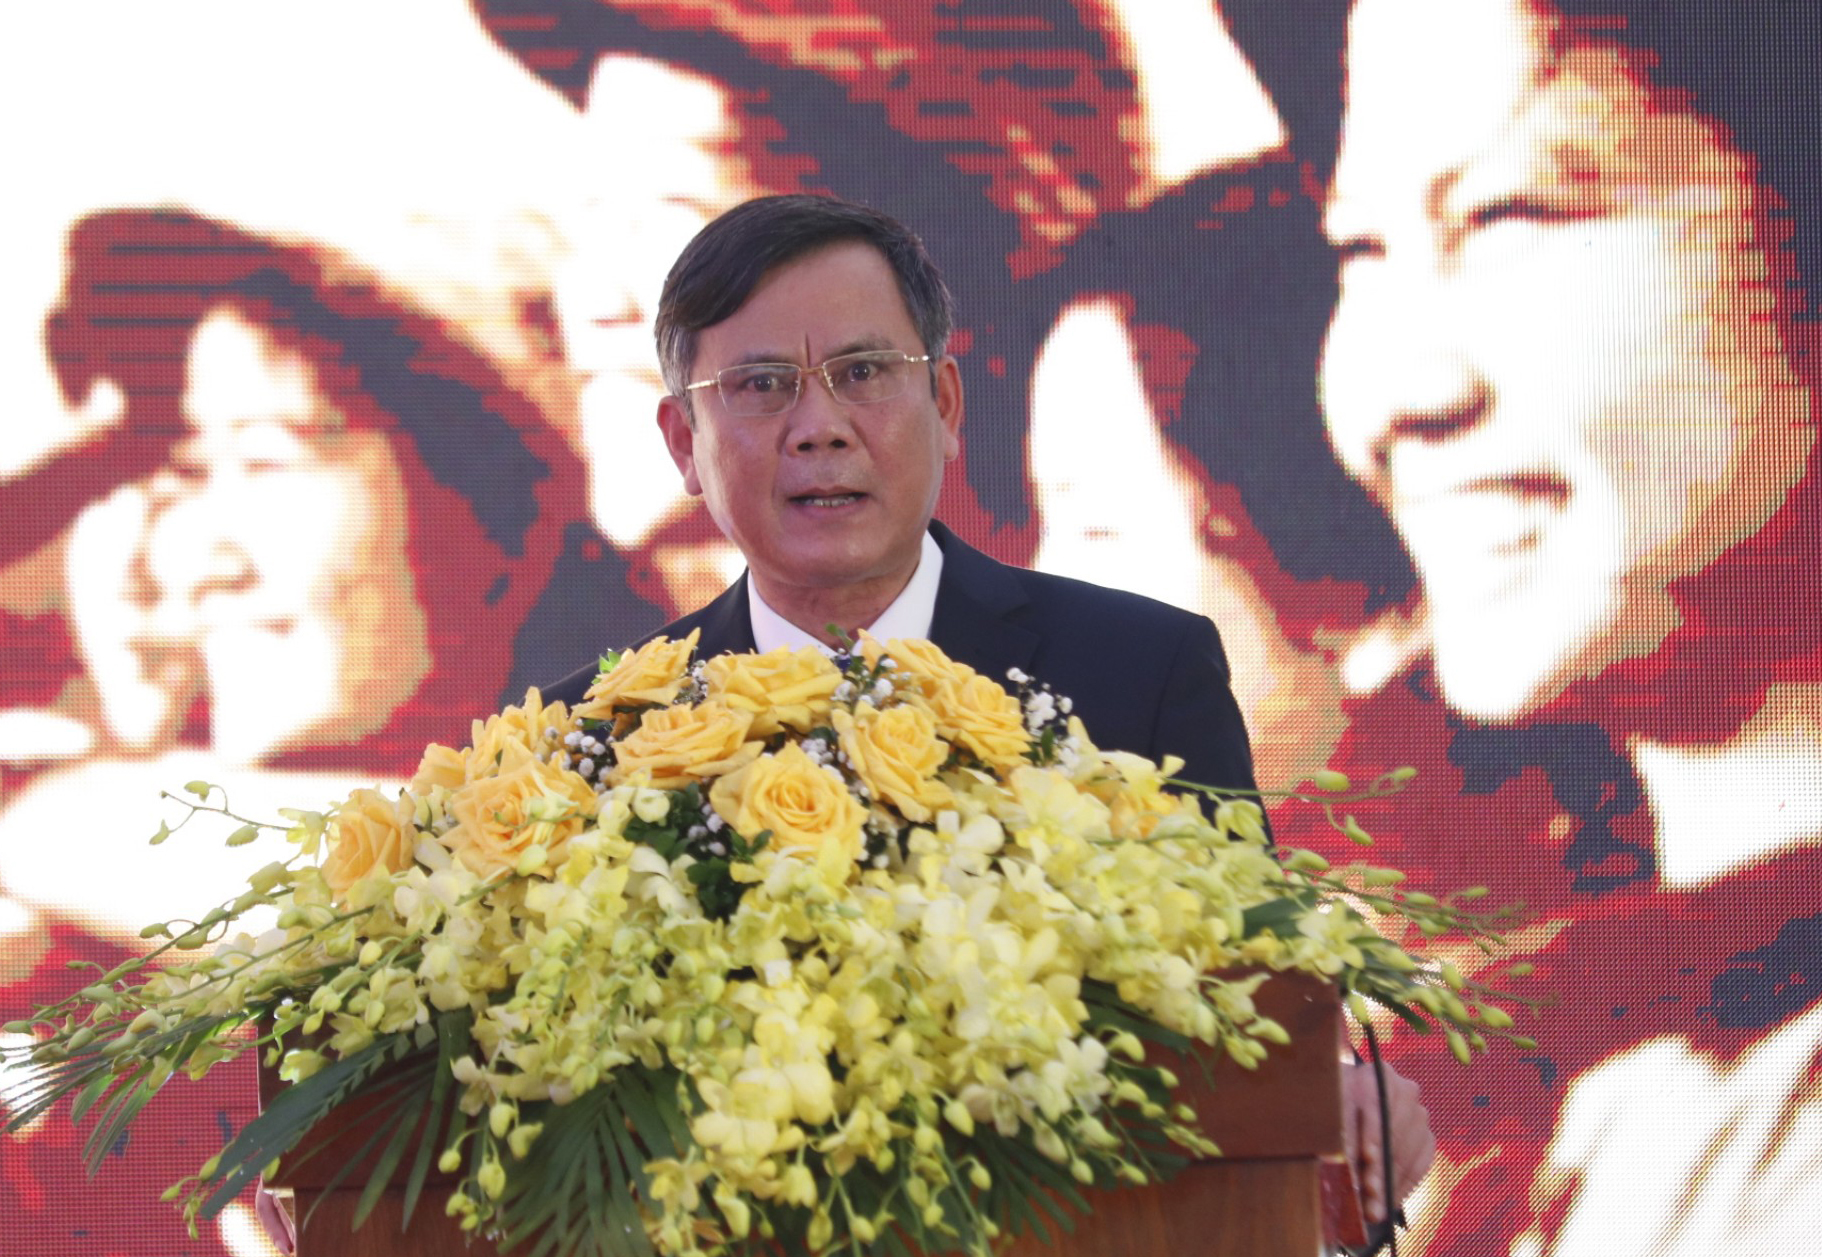 Đồng chí Chủ tịch UBND tỉnh Trần Thắng phát biểu tại buổi lễ.